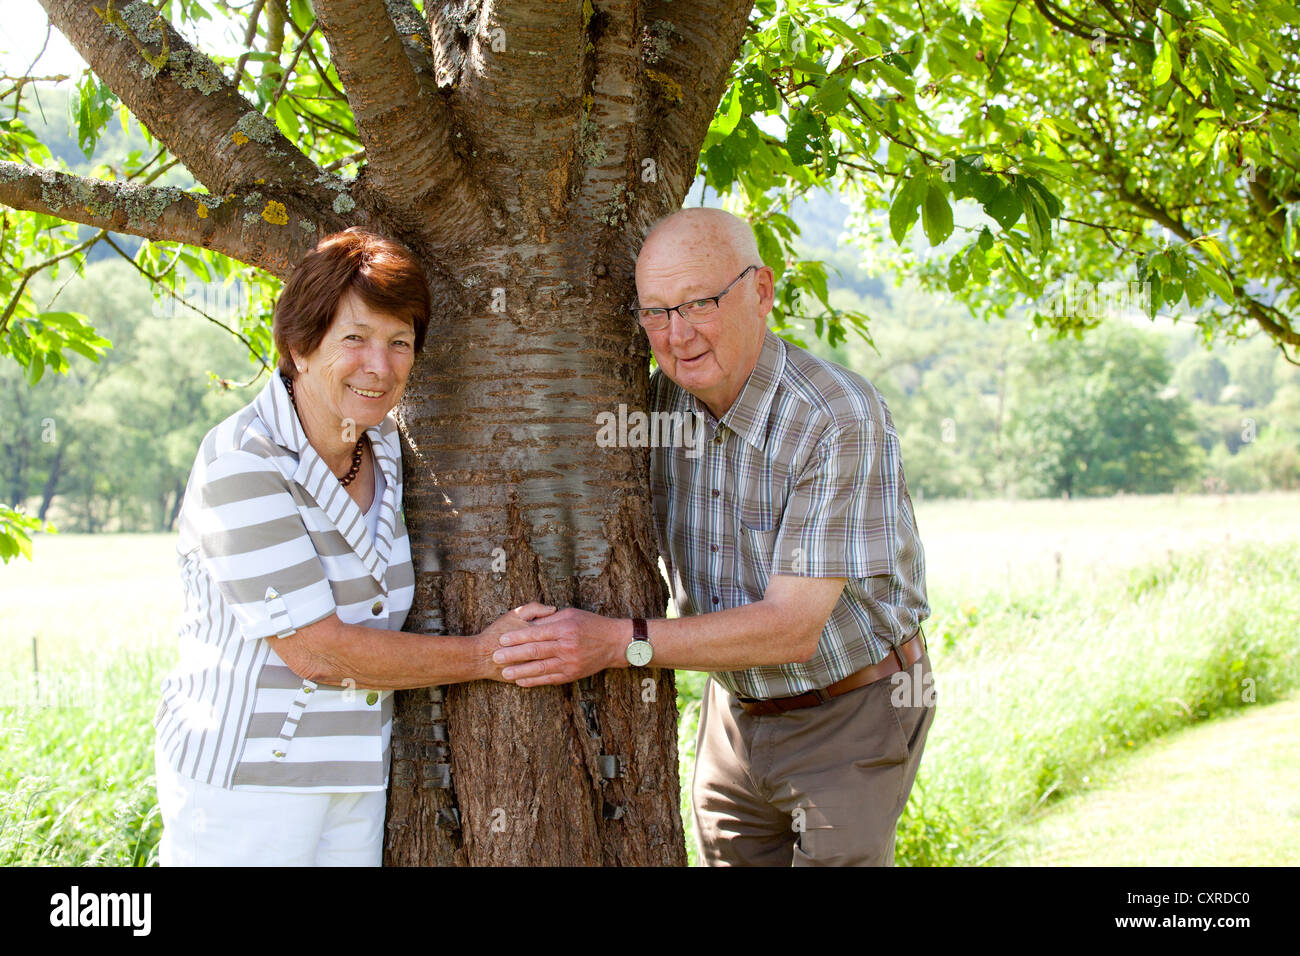 Elderly couple, retirees, 70-80 years old, tree, Bengel, Rhineland-Palatinate, Germany, Europe Stock Photo